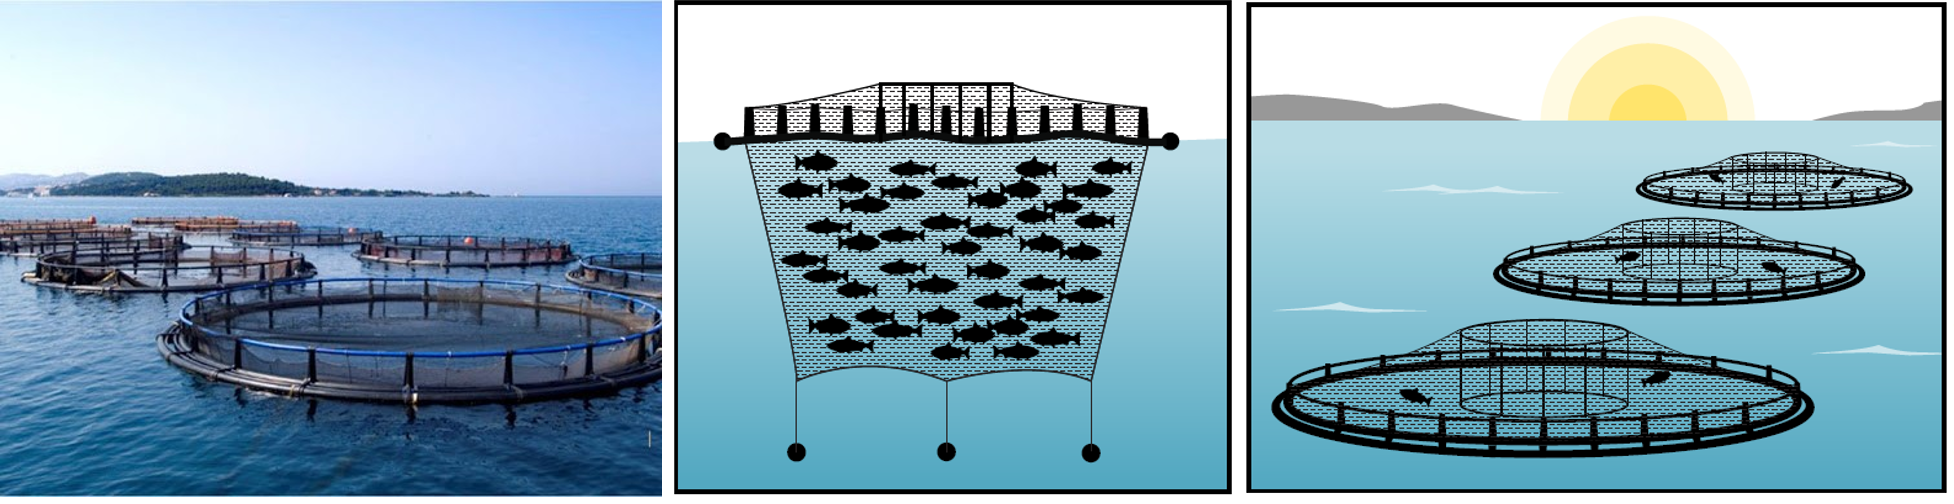 métodos de cultivo gaiolas de salmão